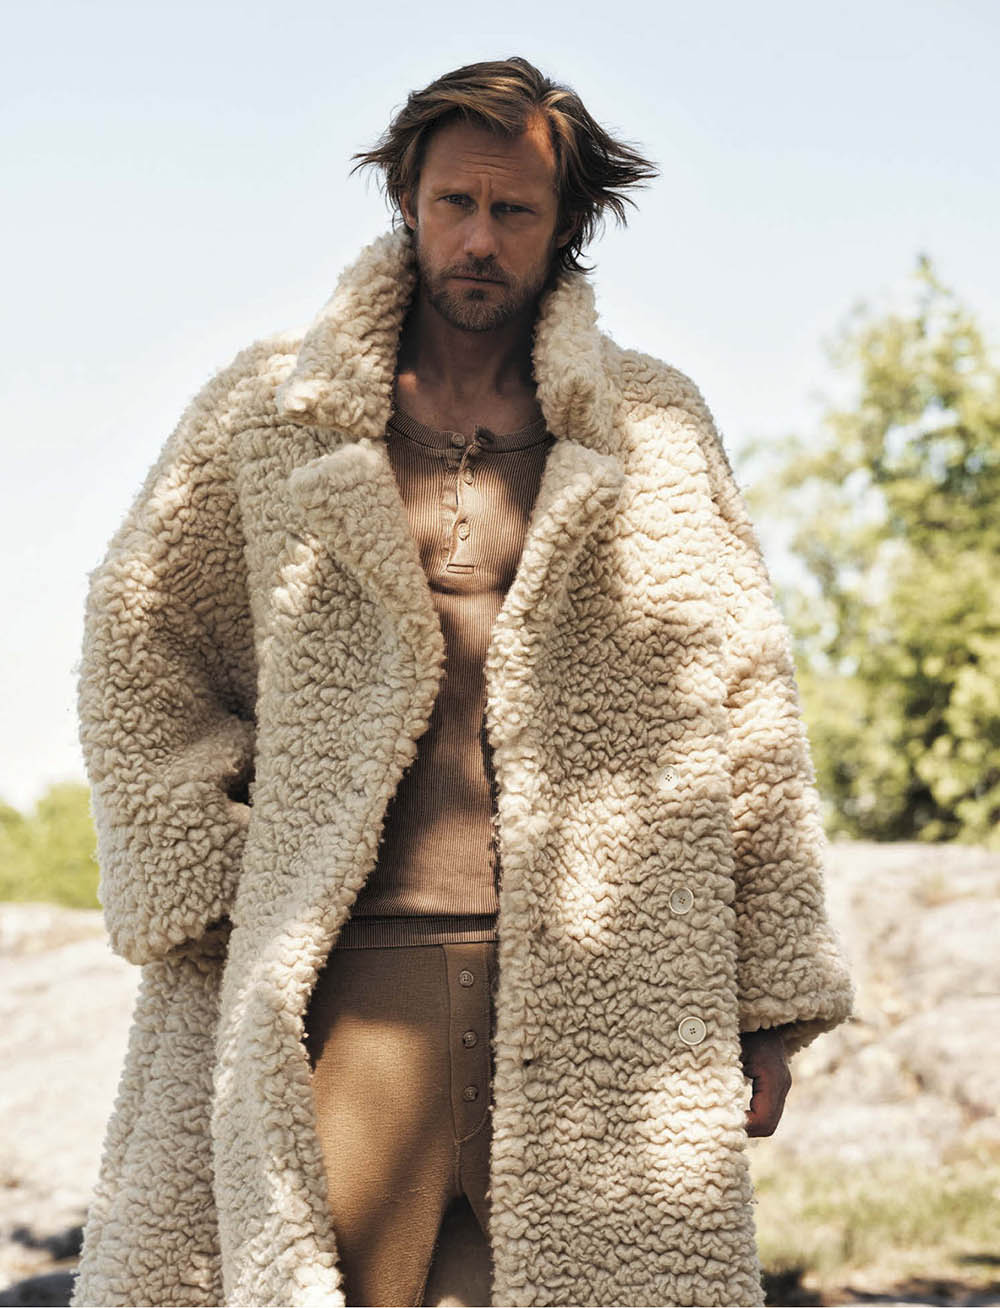 Alexander Skarsgård covers L’Uomo Vogue October 2020 by Johan Sandberg